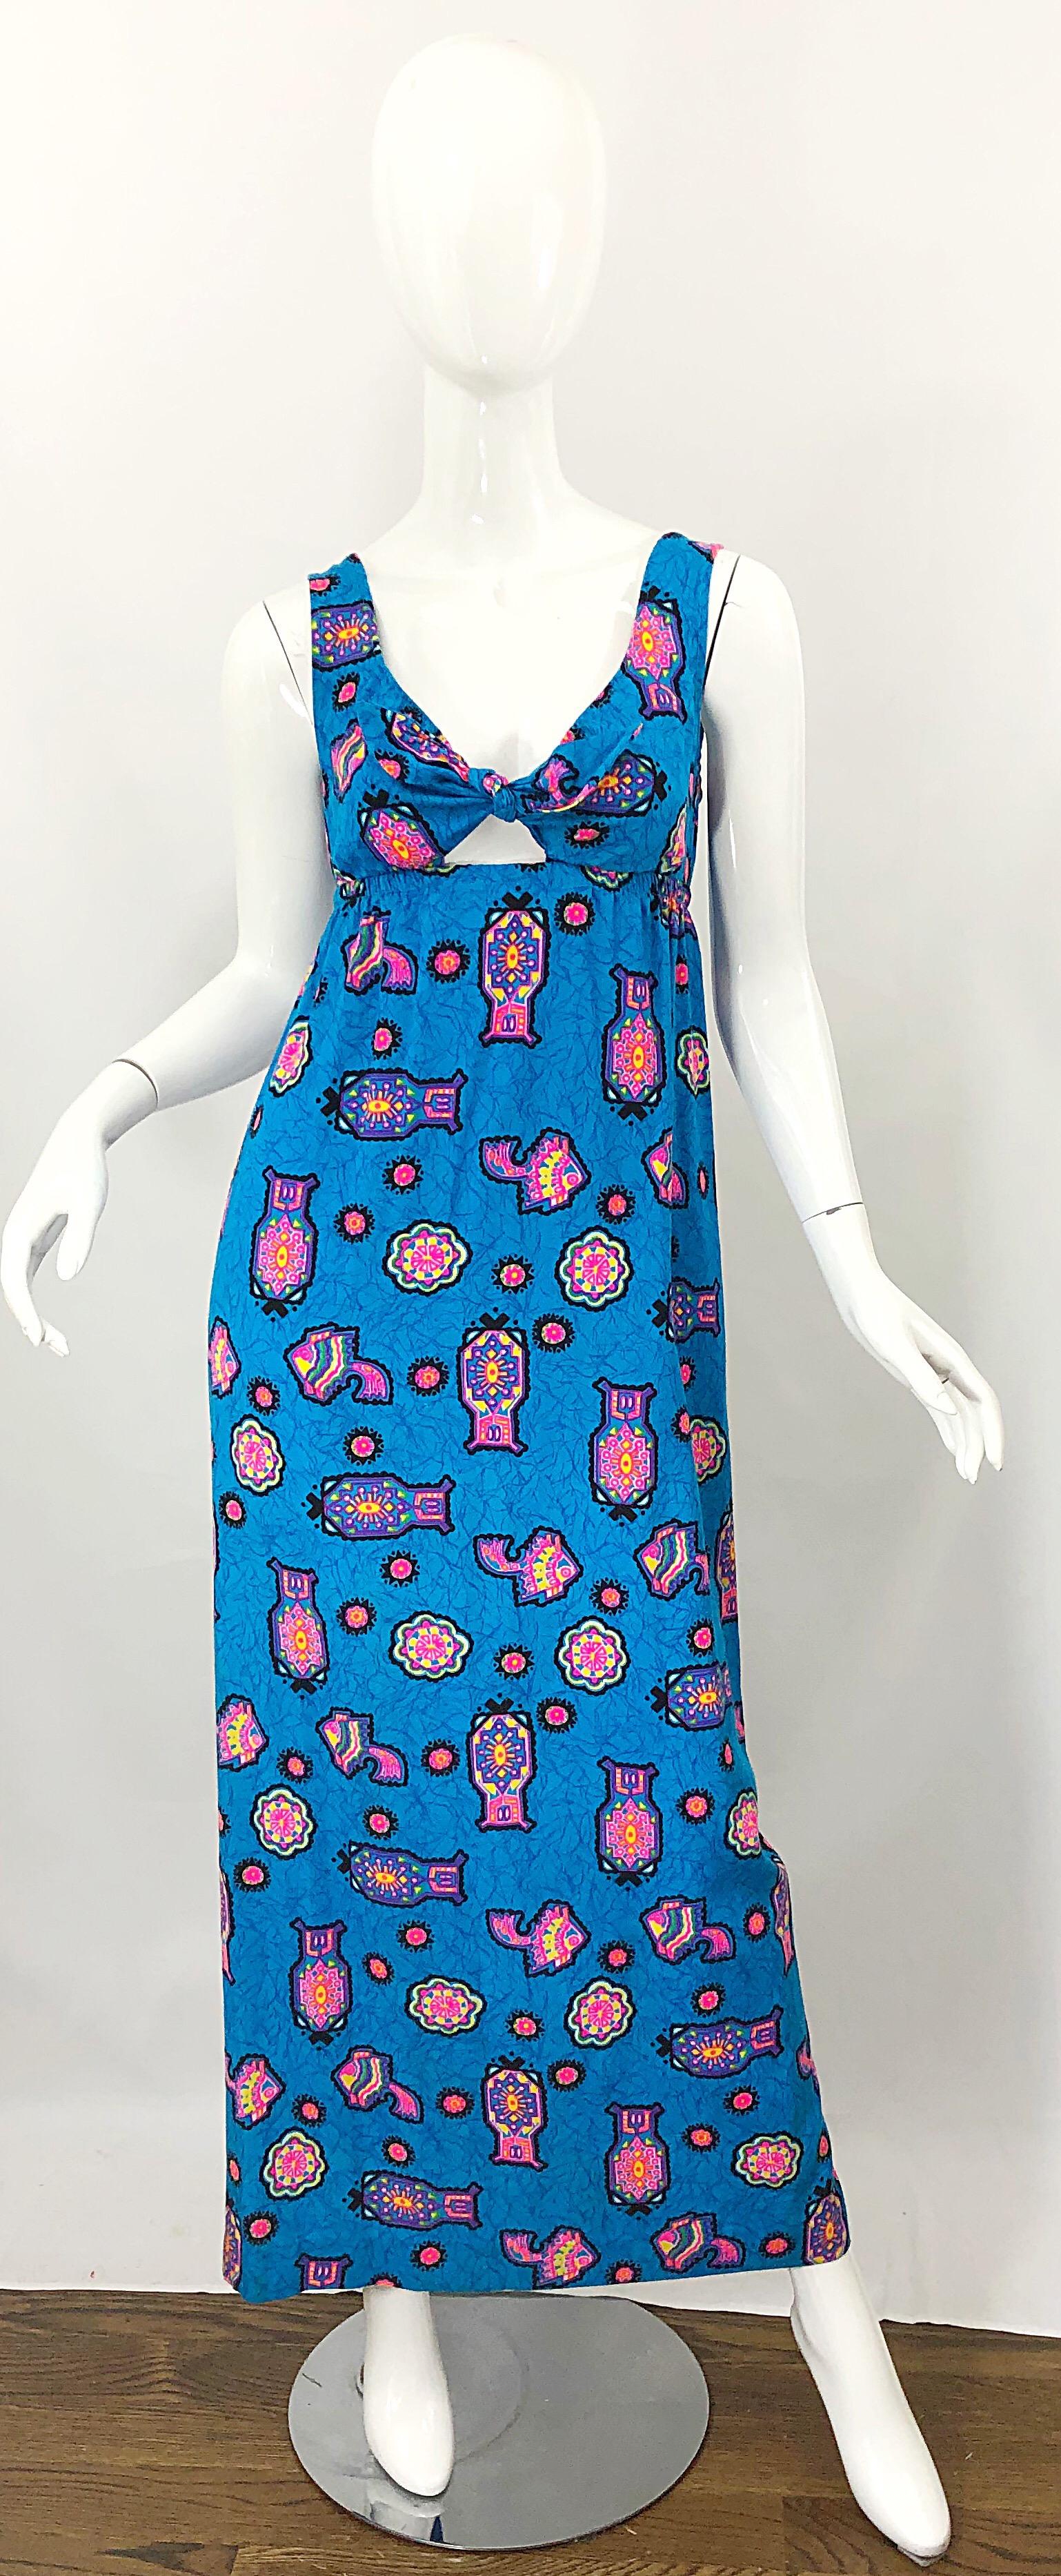 Superbe robe maxi des années 1970, bleu céruléen et rose, en coton mélangé, à imprimé abstrait aztèque Les couleurs vibrantes du rose vif, du jaune, du violet et du vert sont omniprésentes. Il se glisse simplement sur la tête et s'étire grâce à une